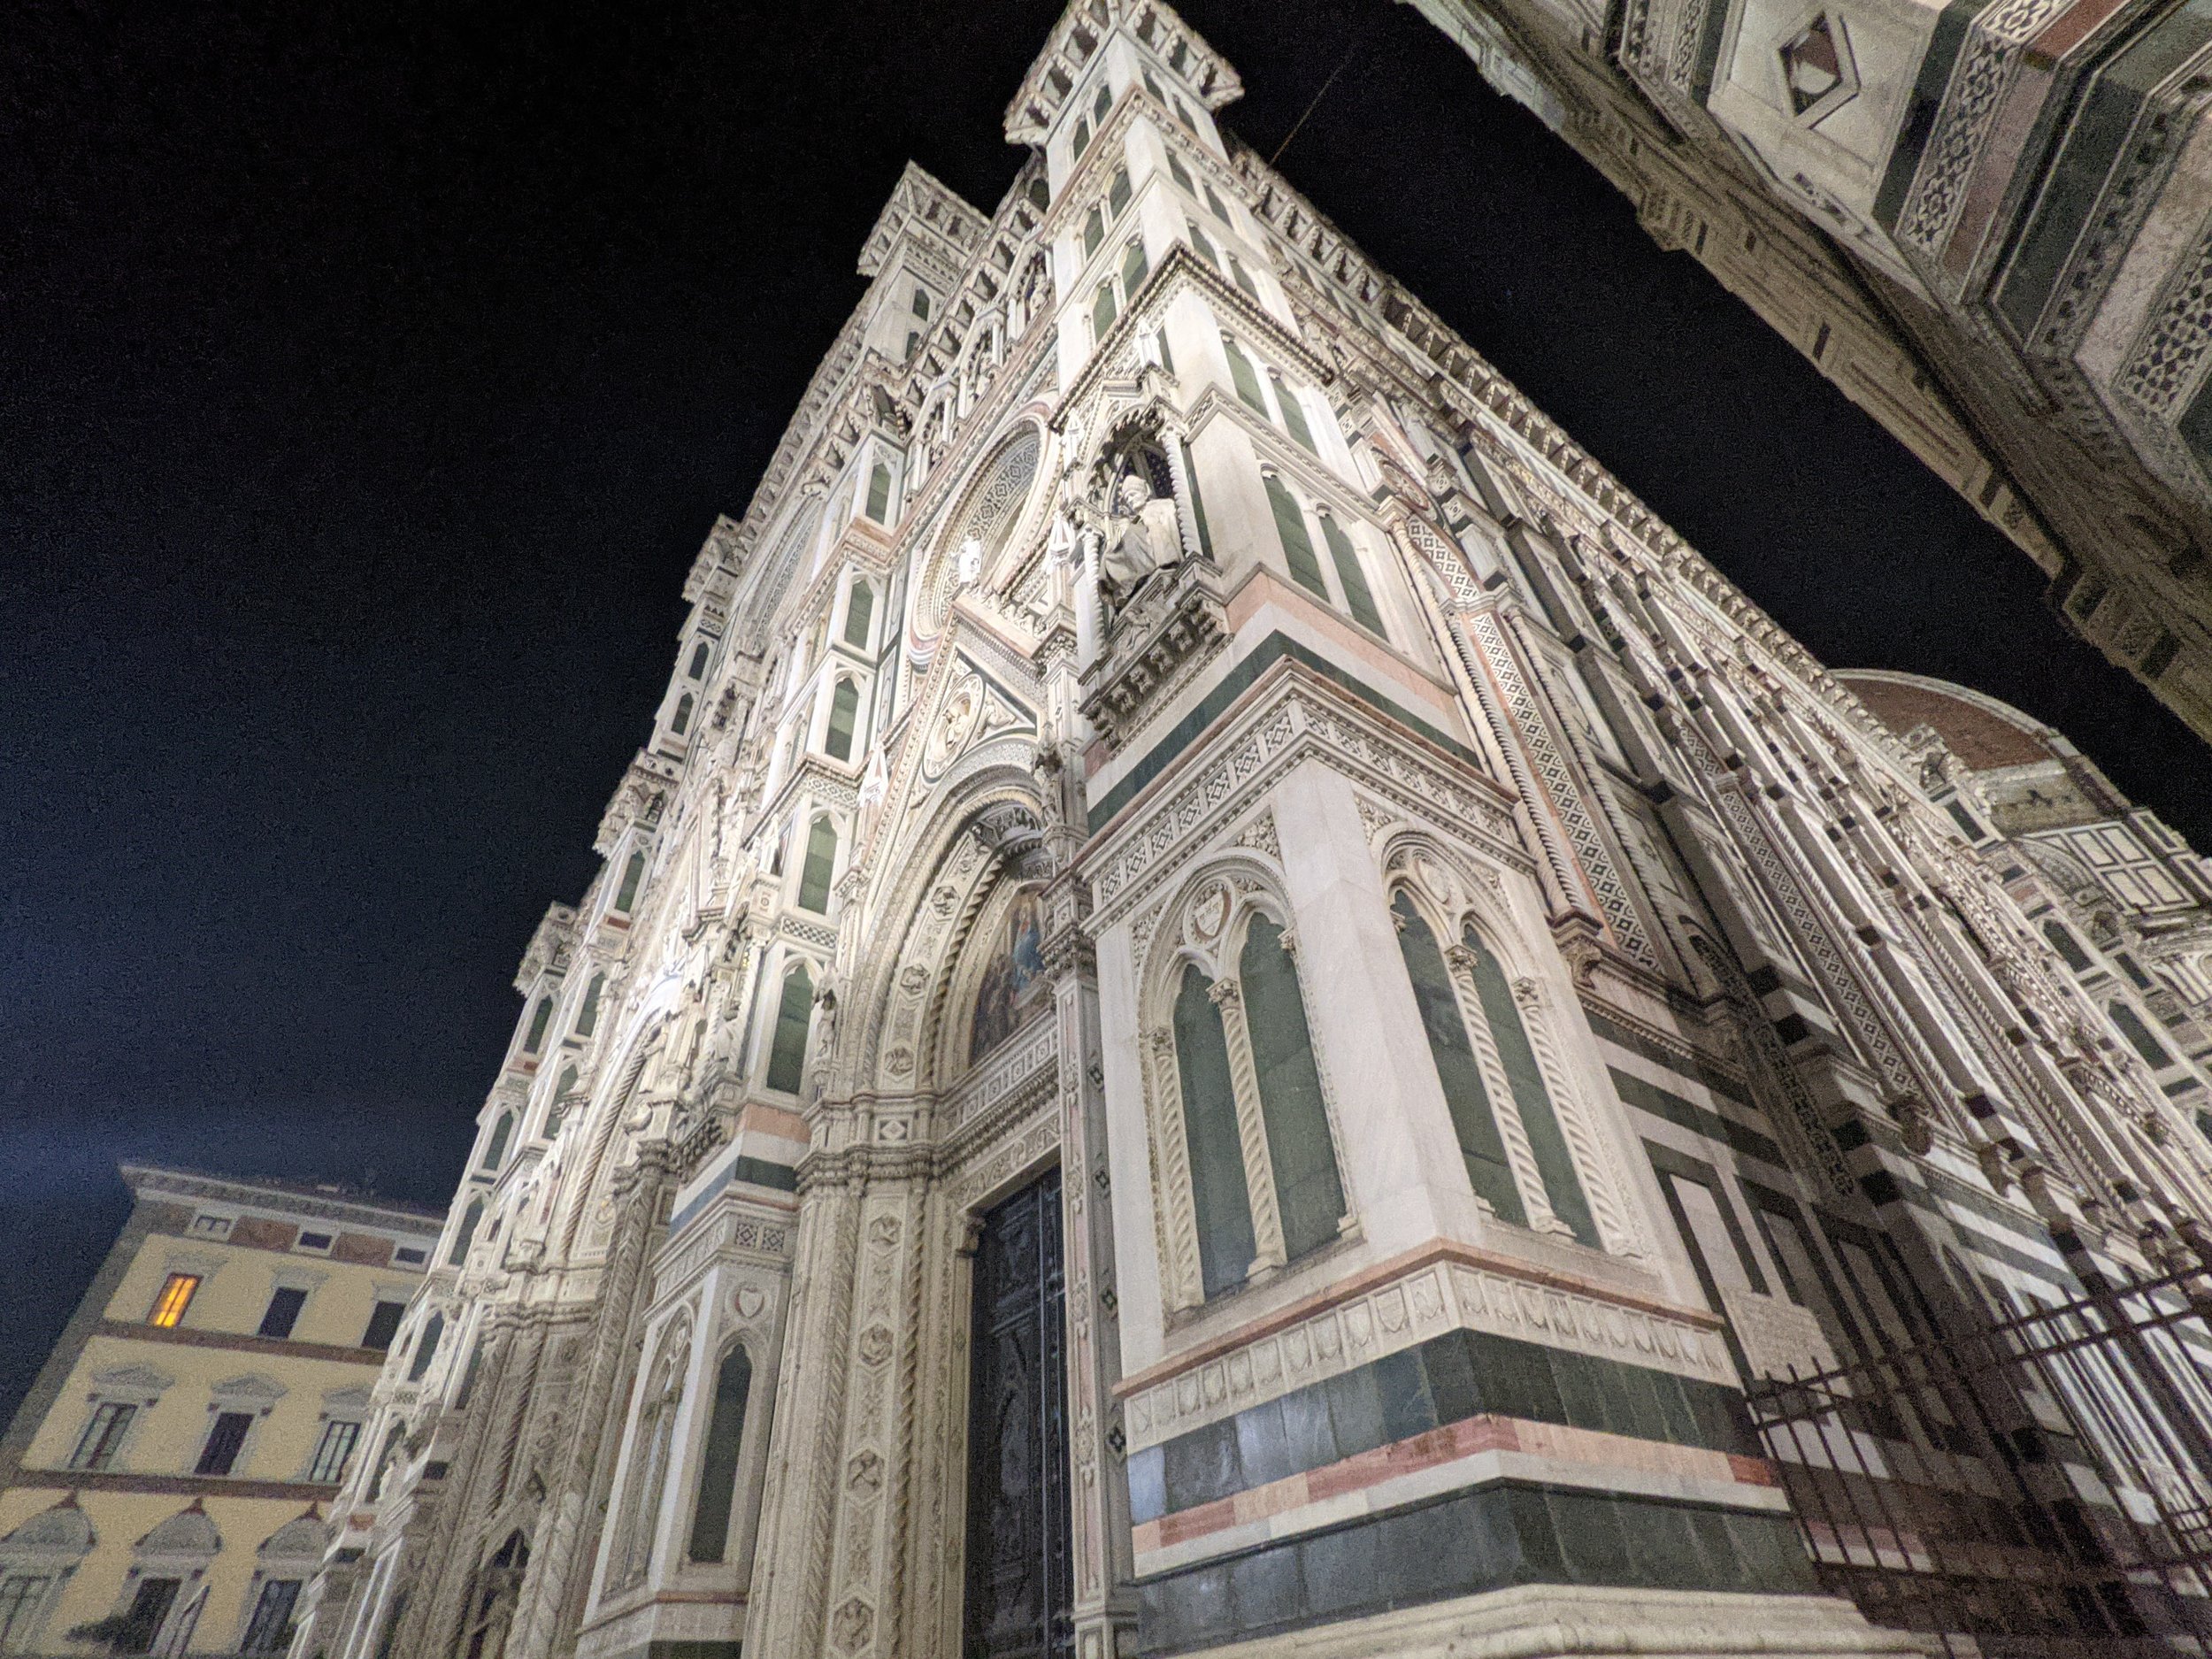 The Duomo at Night